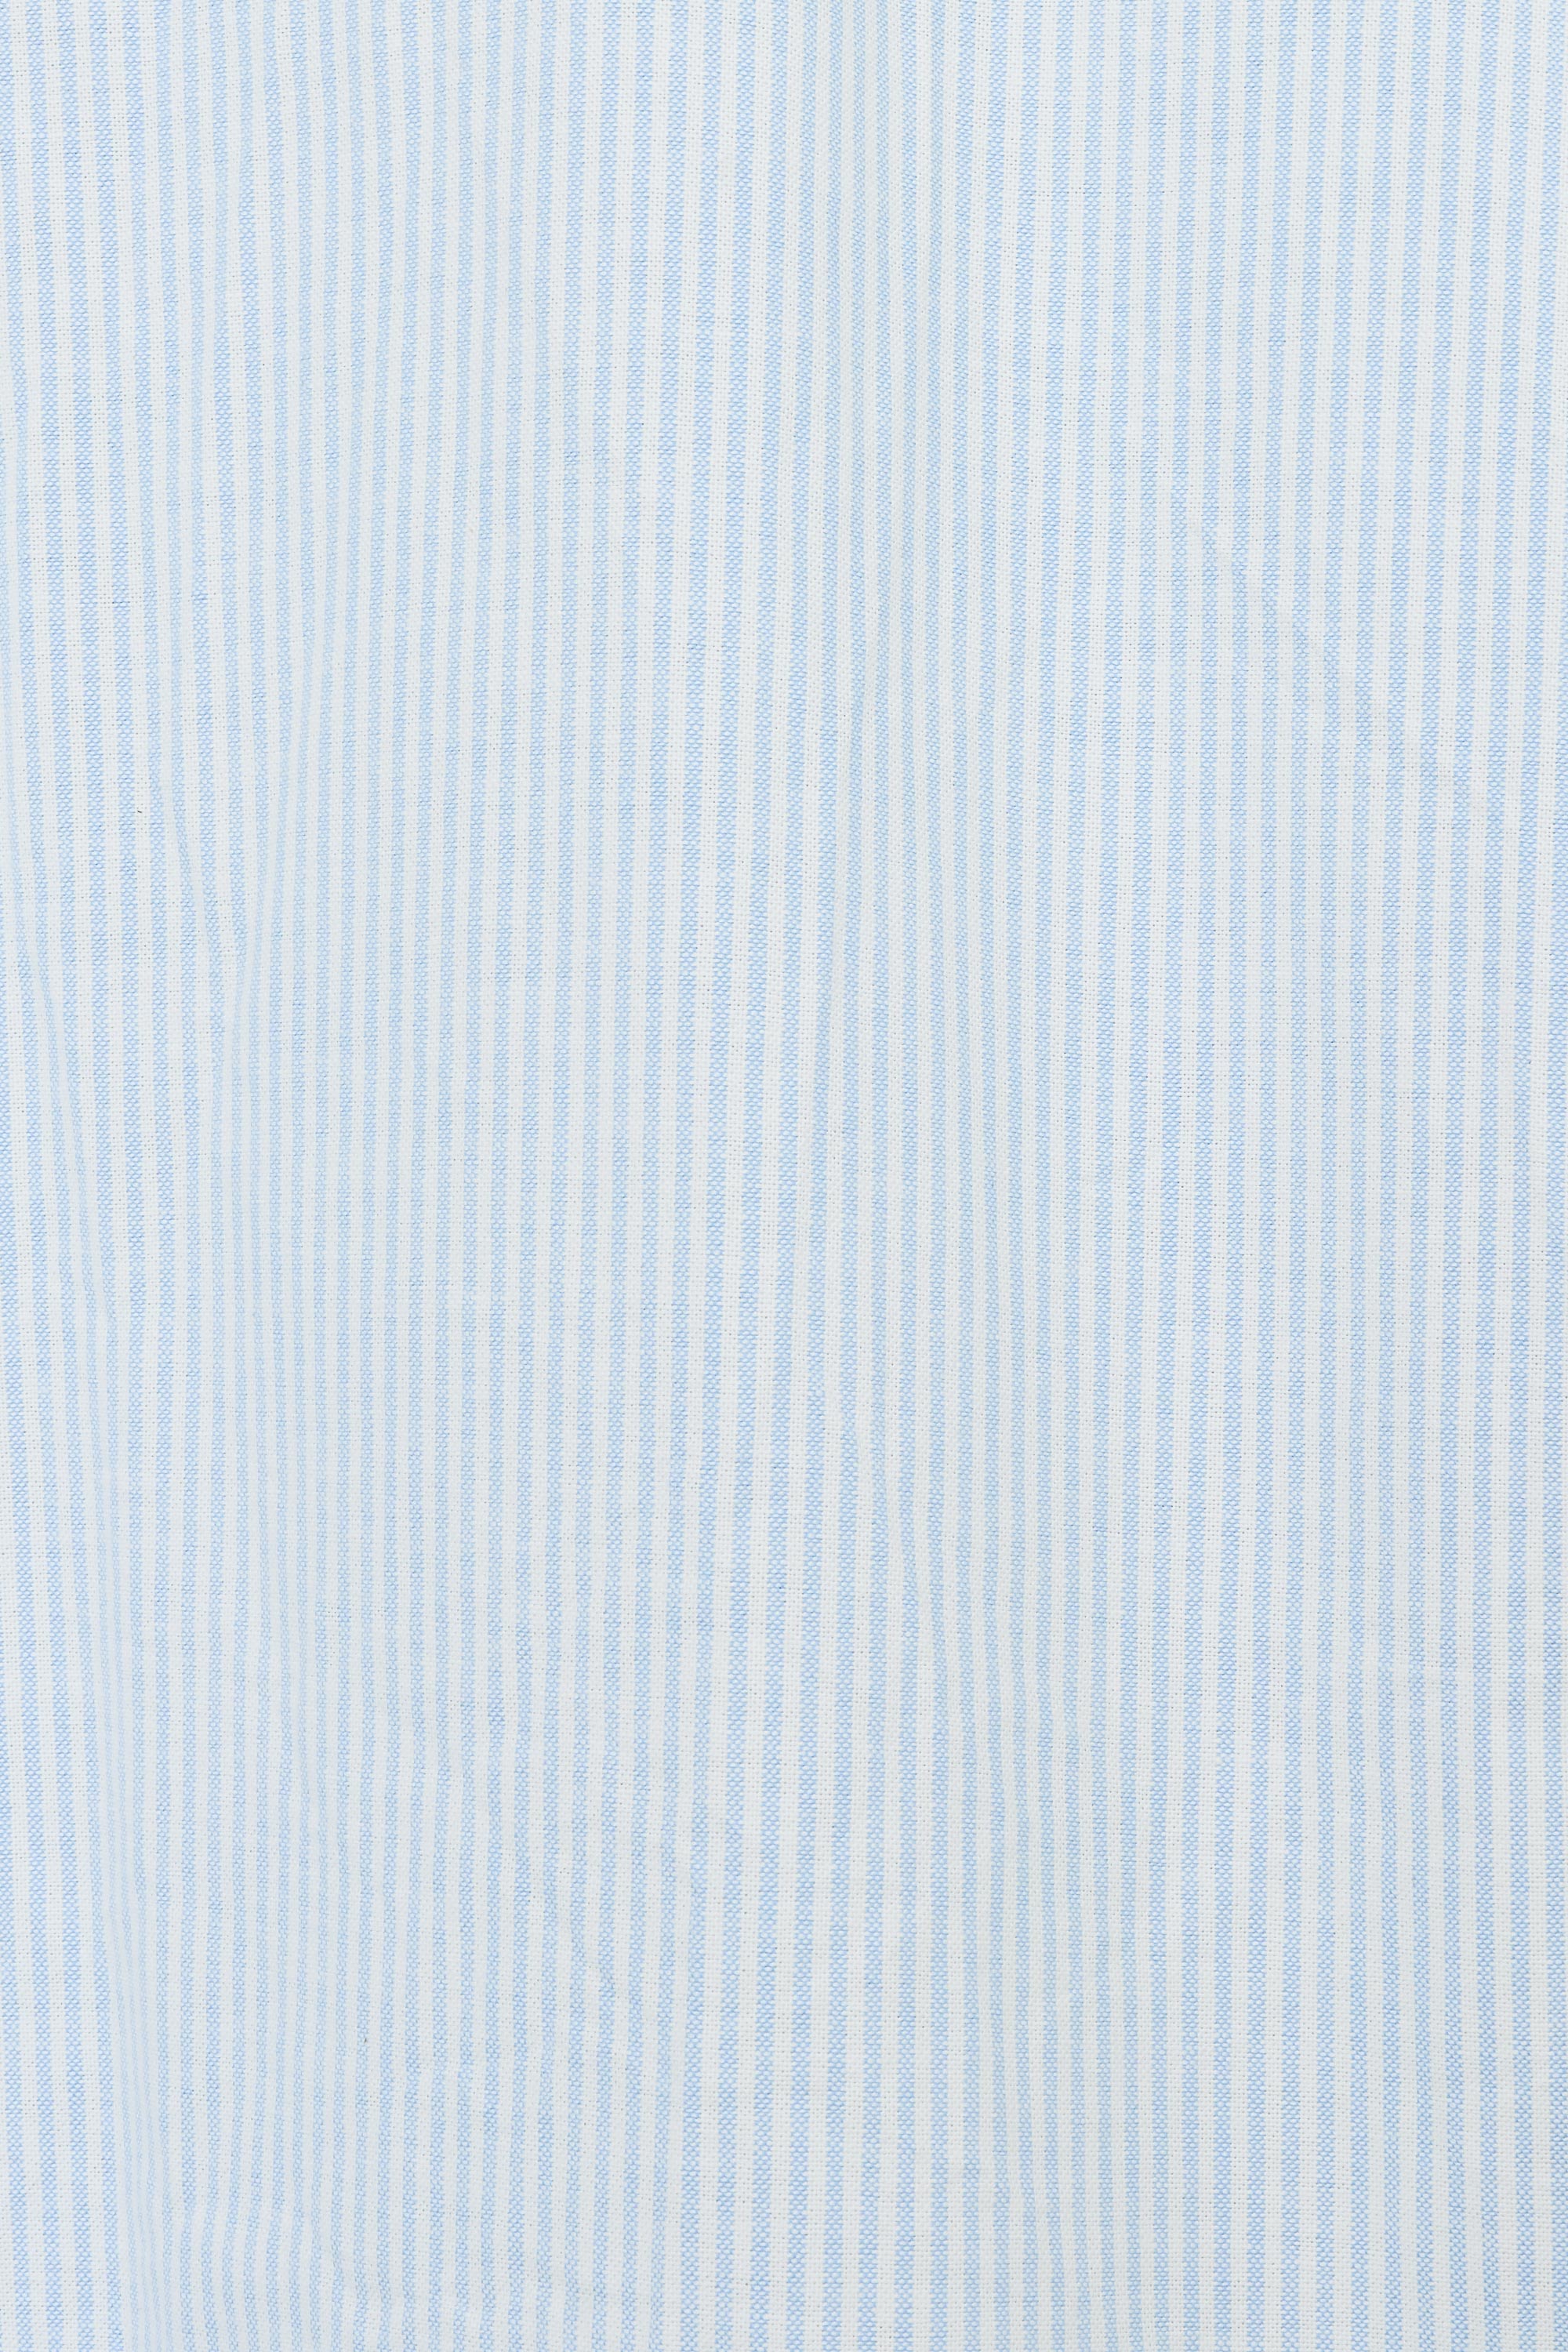 オーガニックコットンオックスストライプ / ワークシャツ S/S, Saxe Stripe